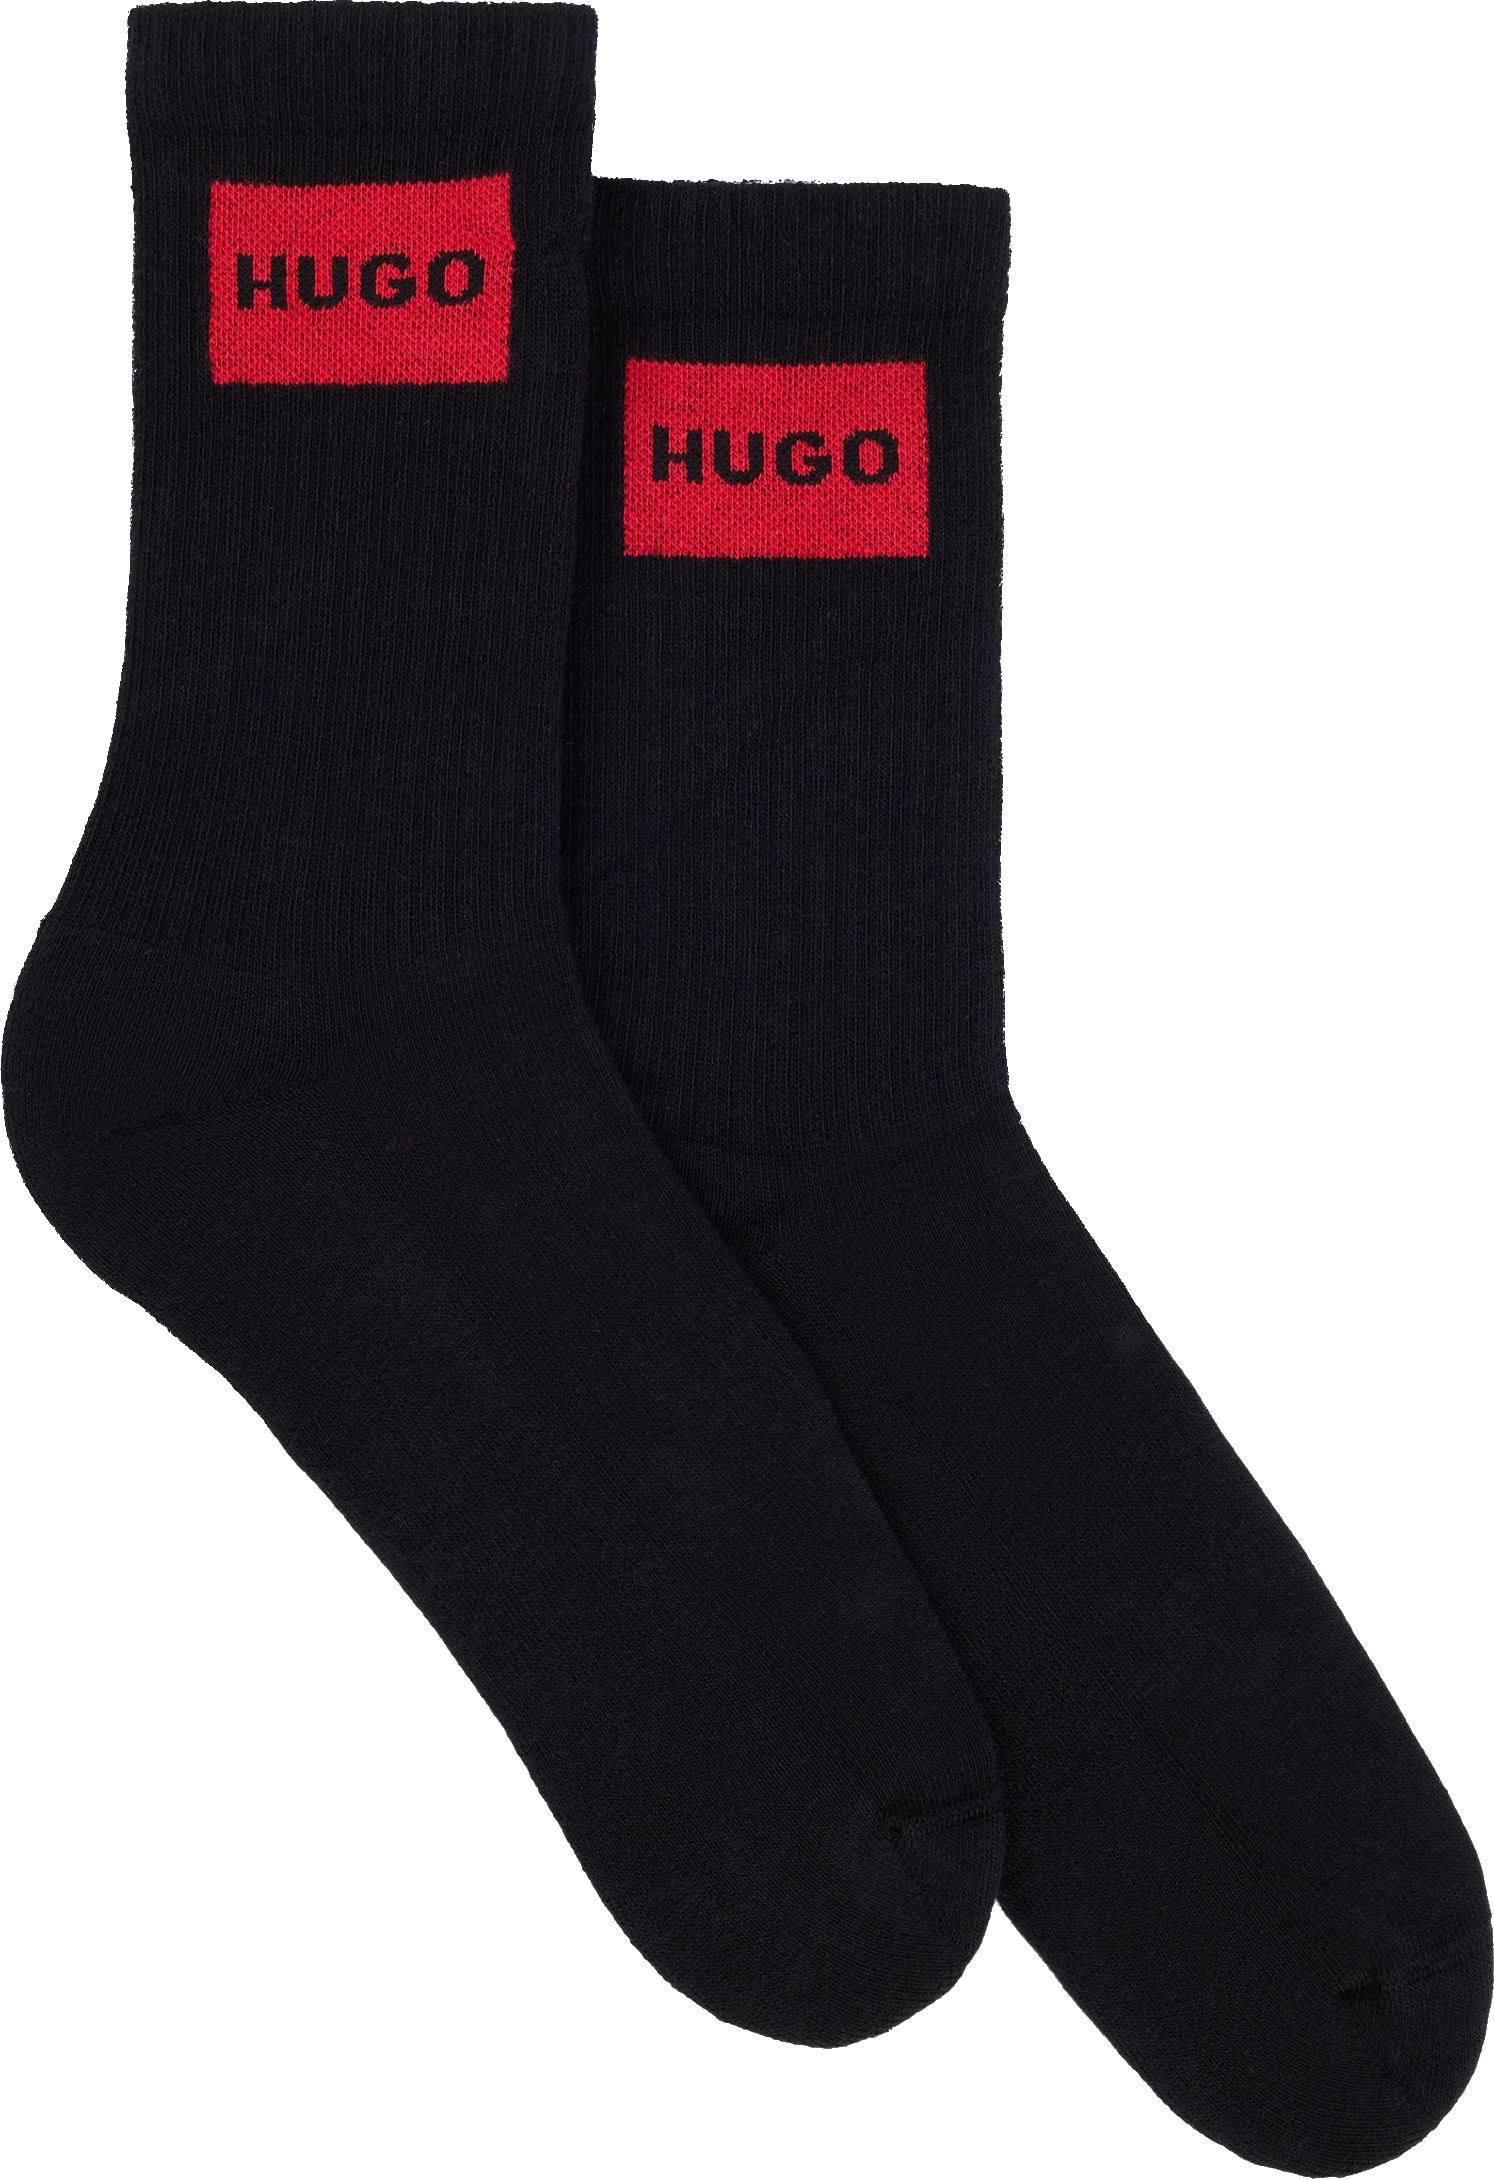 Hugo Boss 2 PACK - pánske ponožky HUGO 50510640-001 43-46